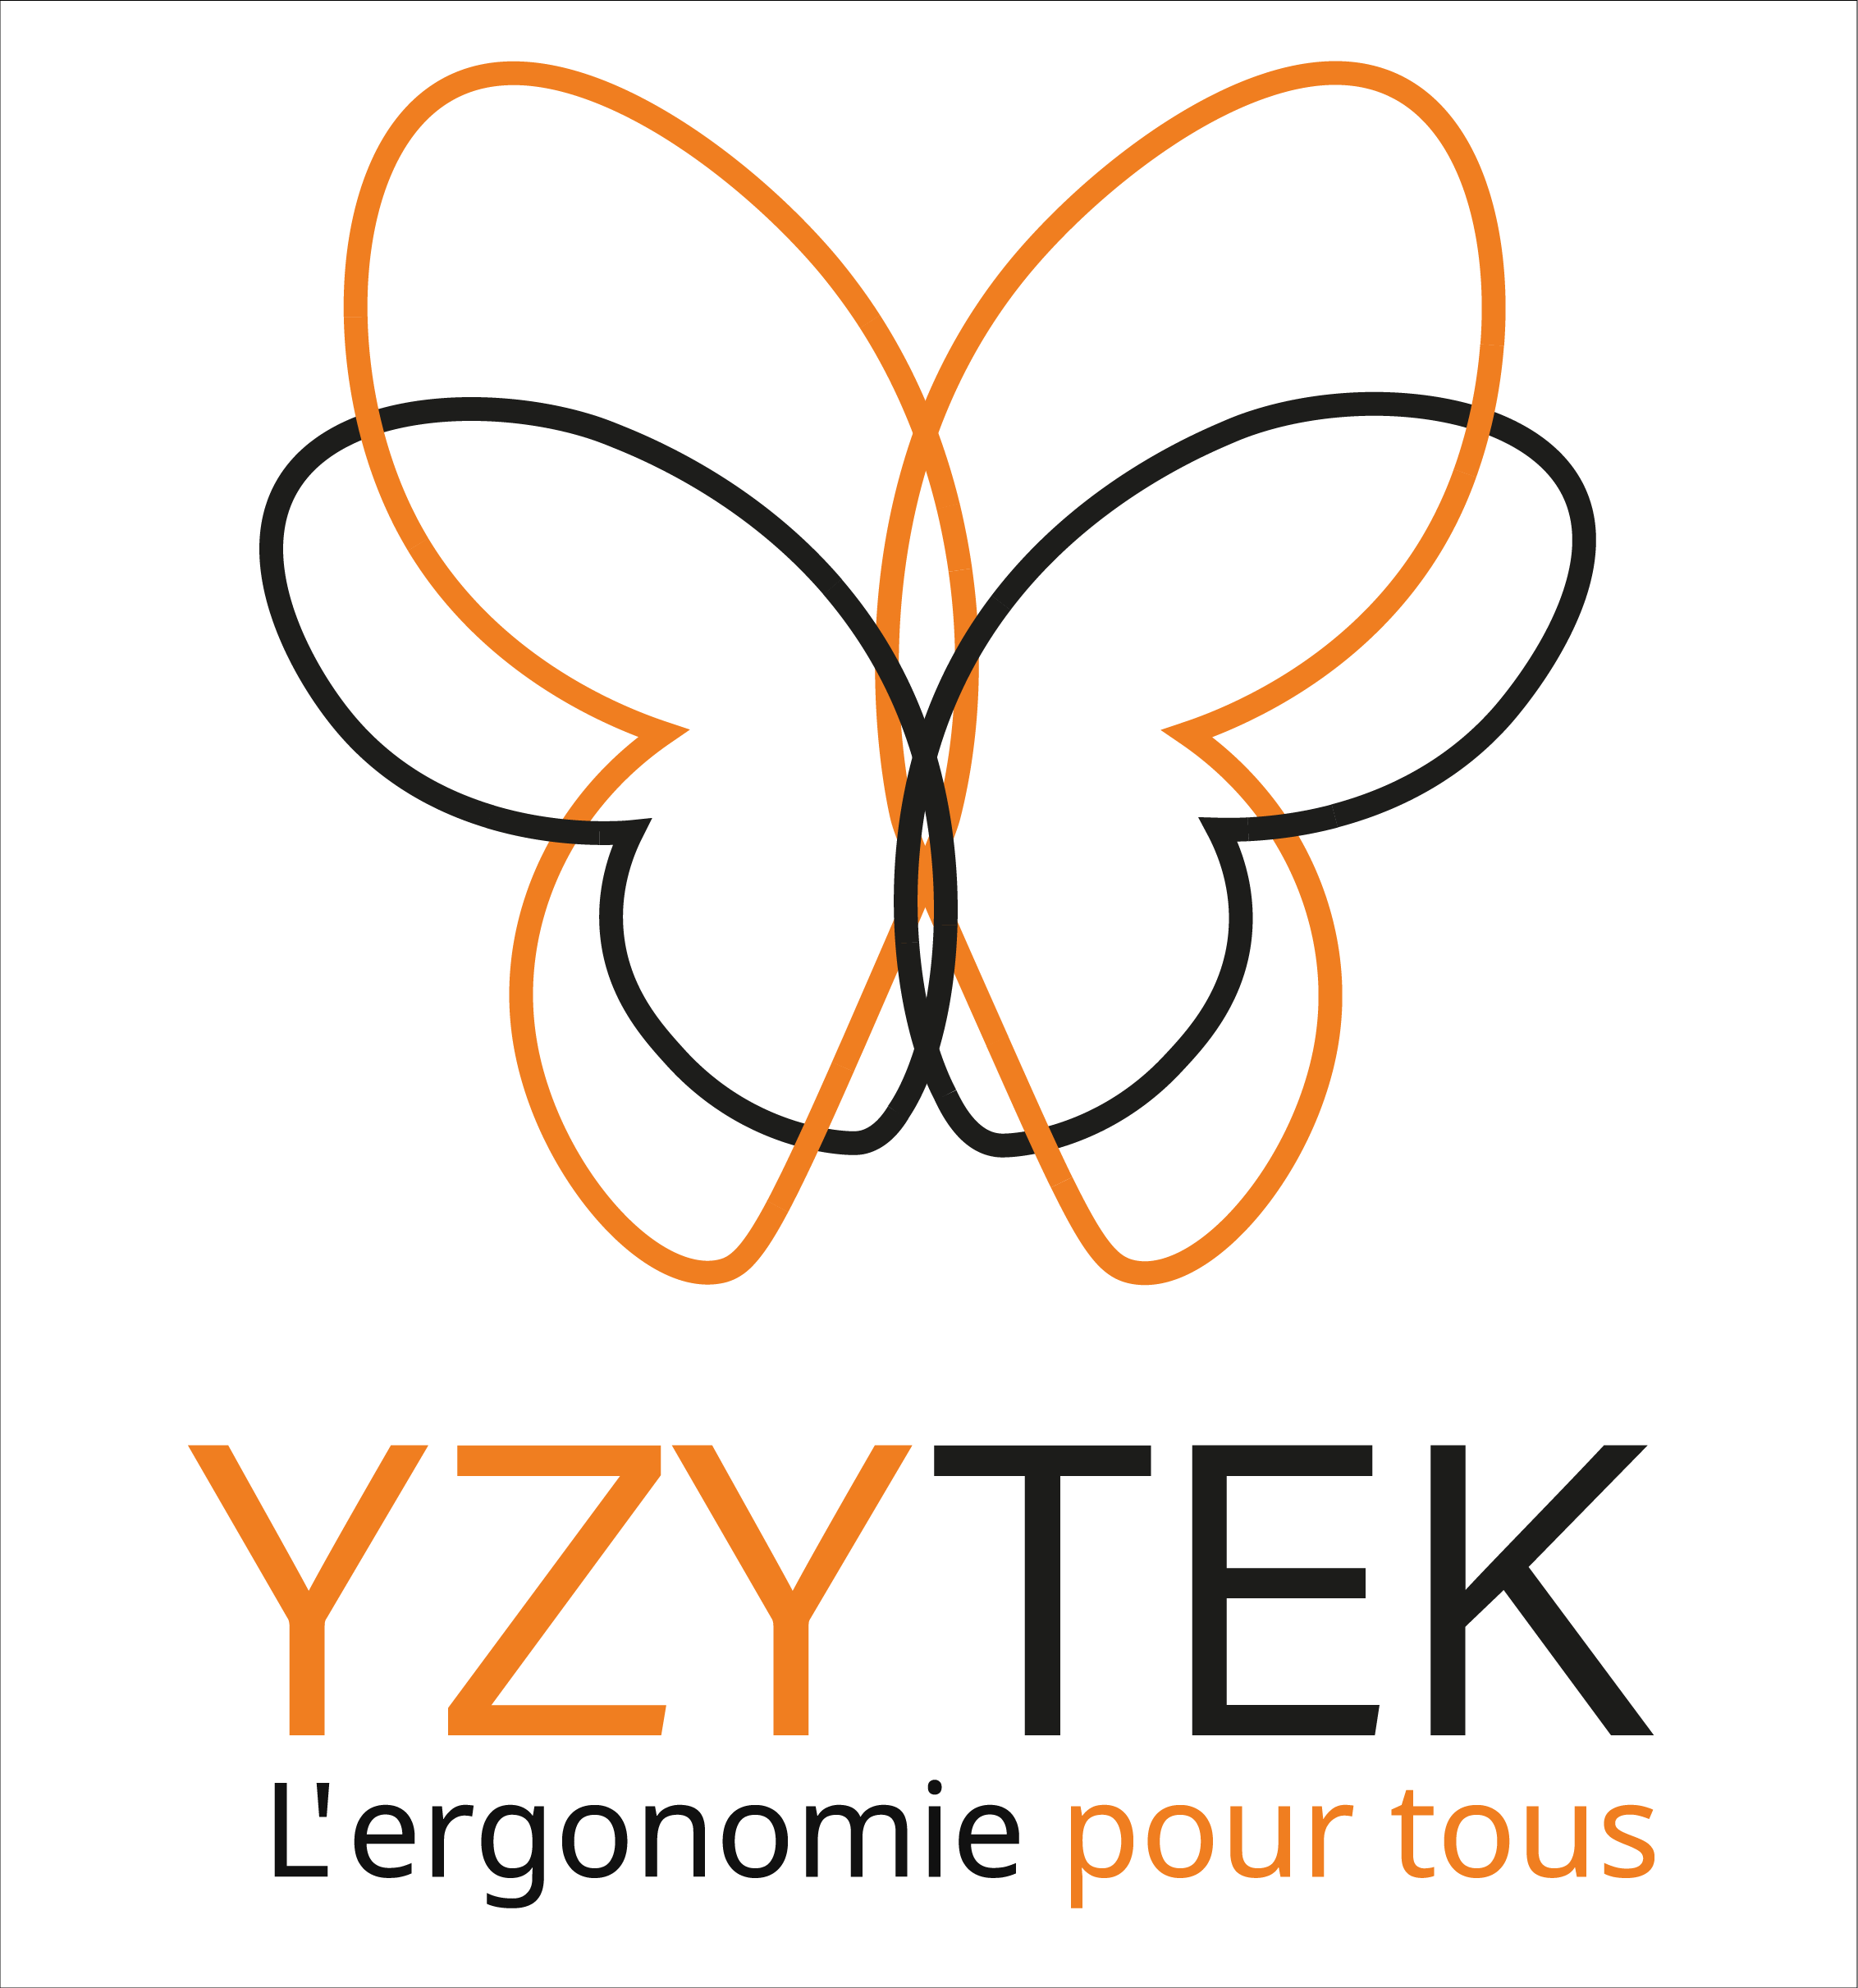 YZYTEK - L'ergonomie pour tous